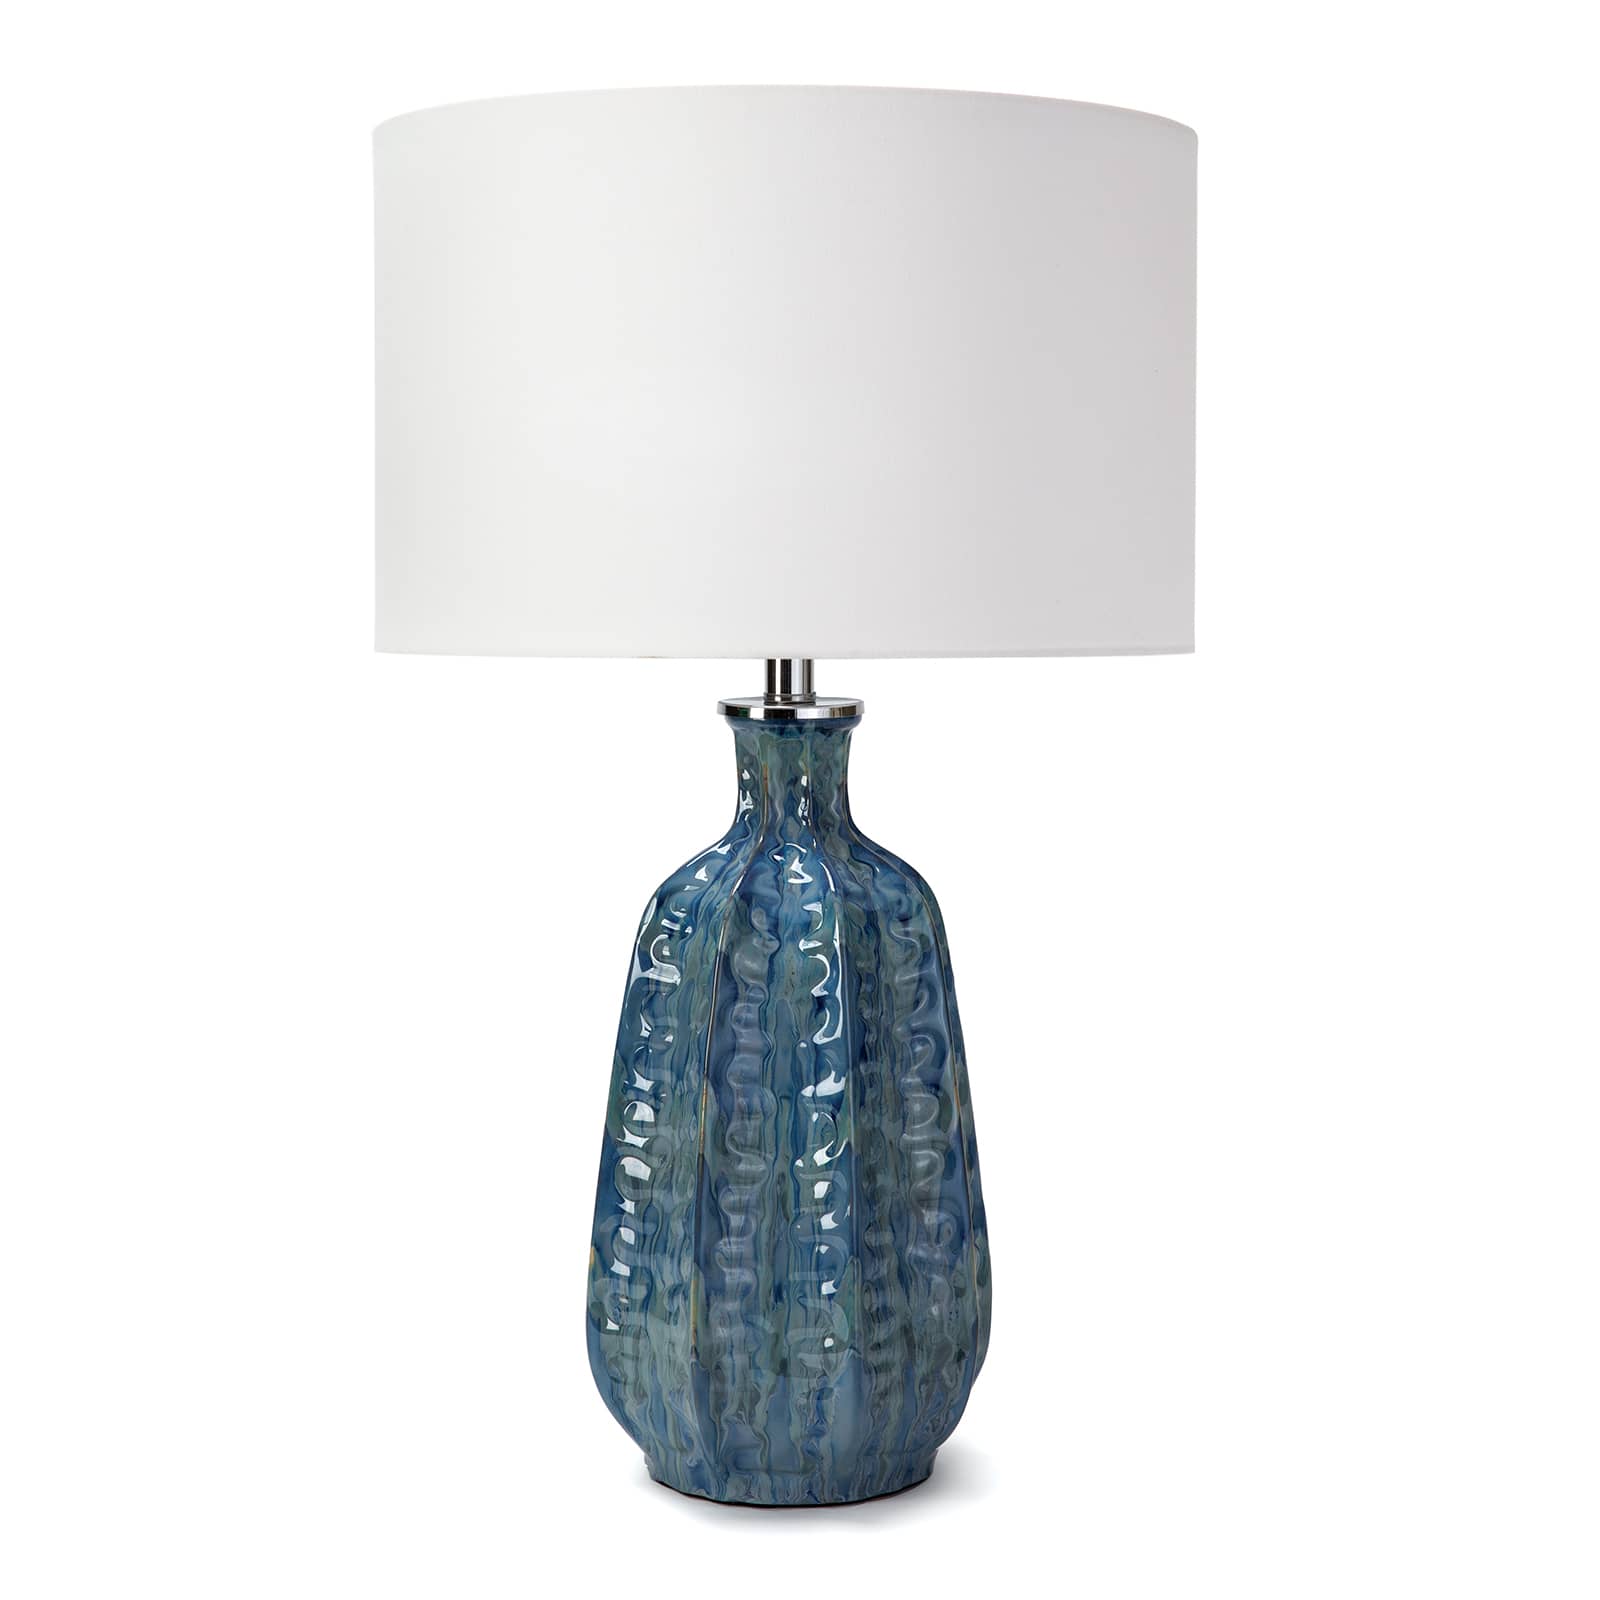 Regina Andrew Antigua Ceramic Table Lamp in Blue